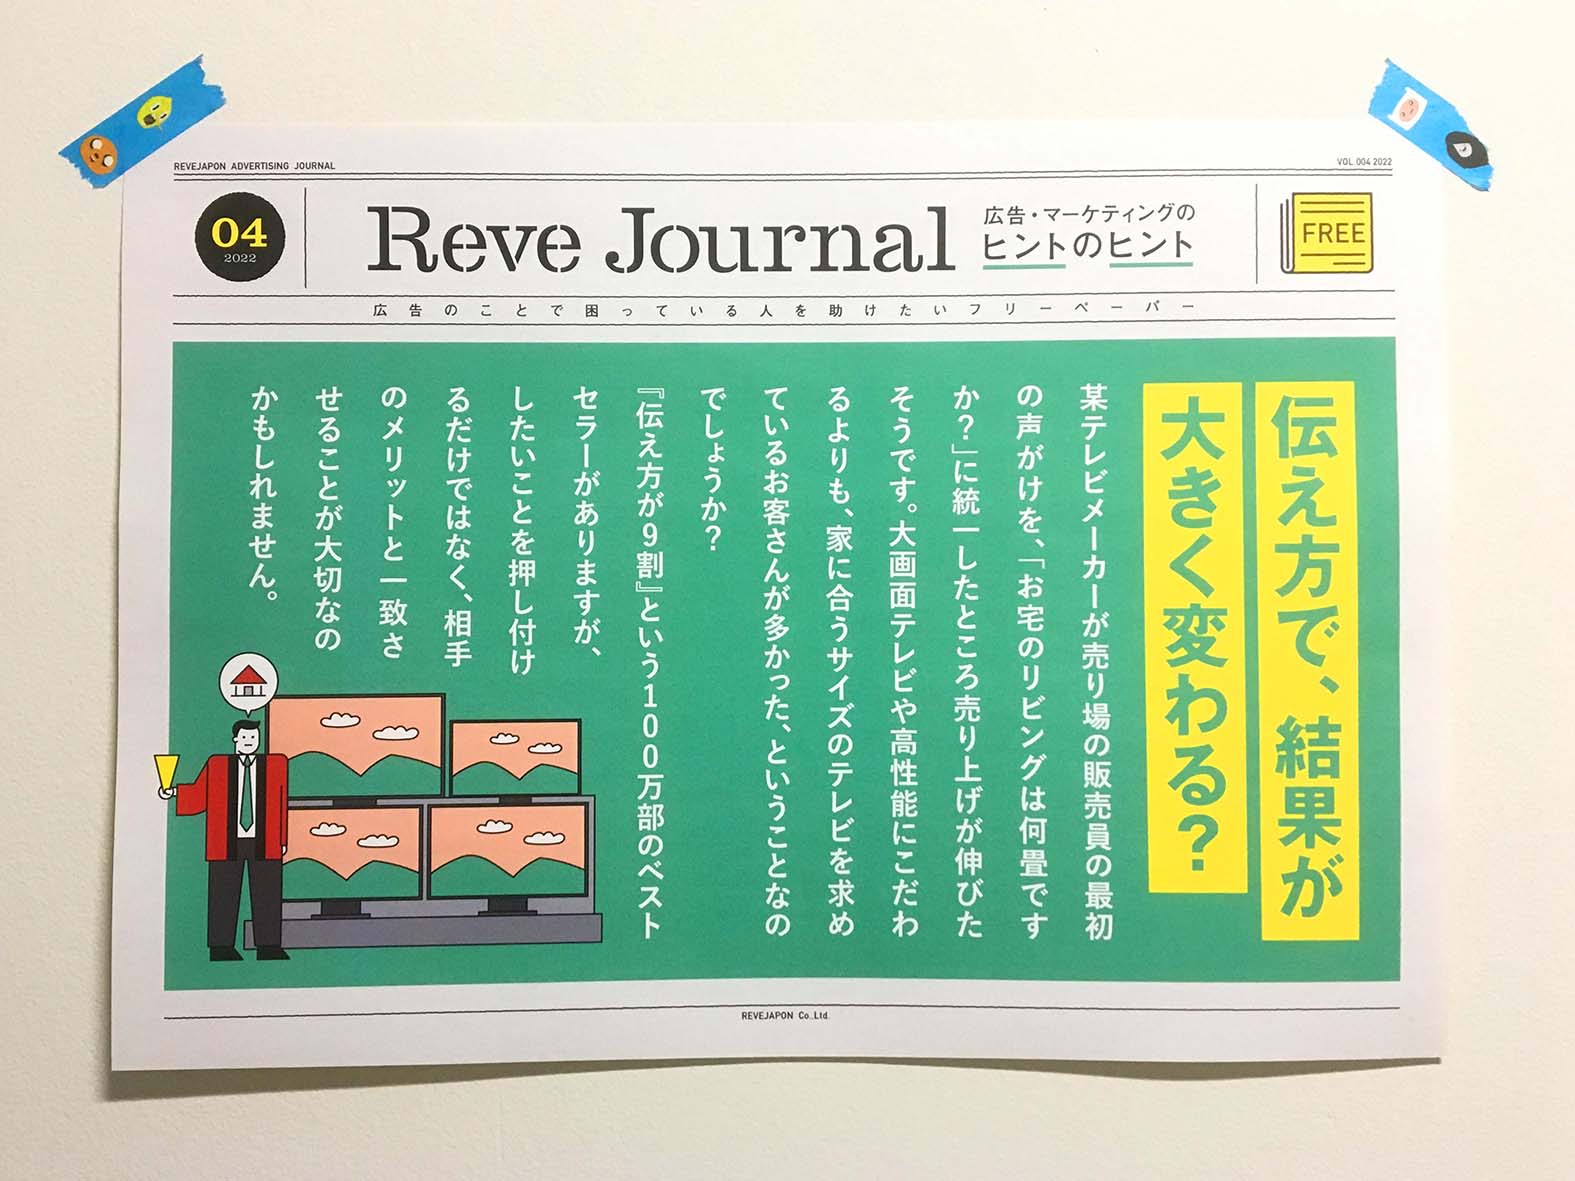 Reve Journal 04